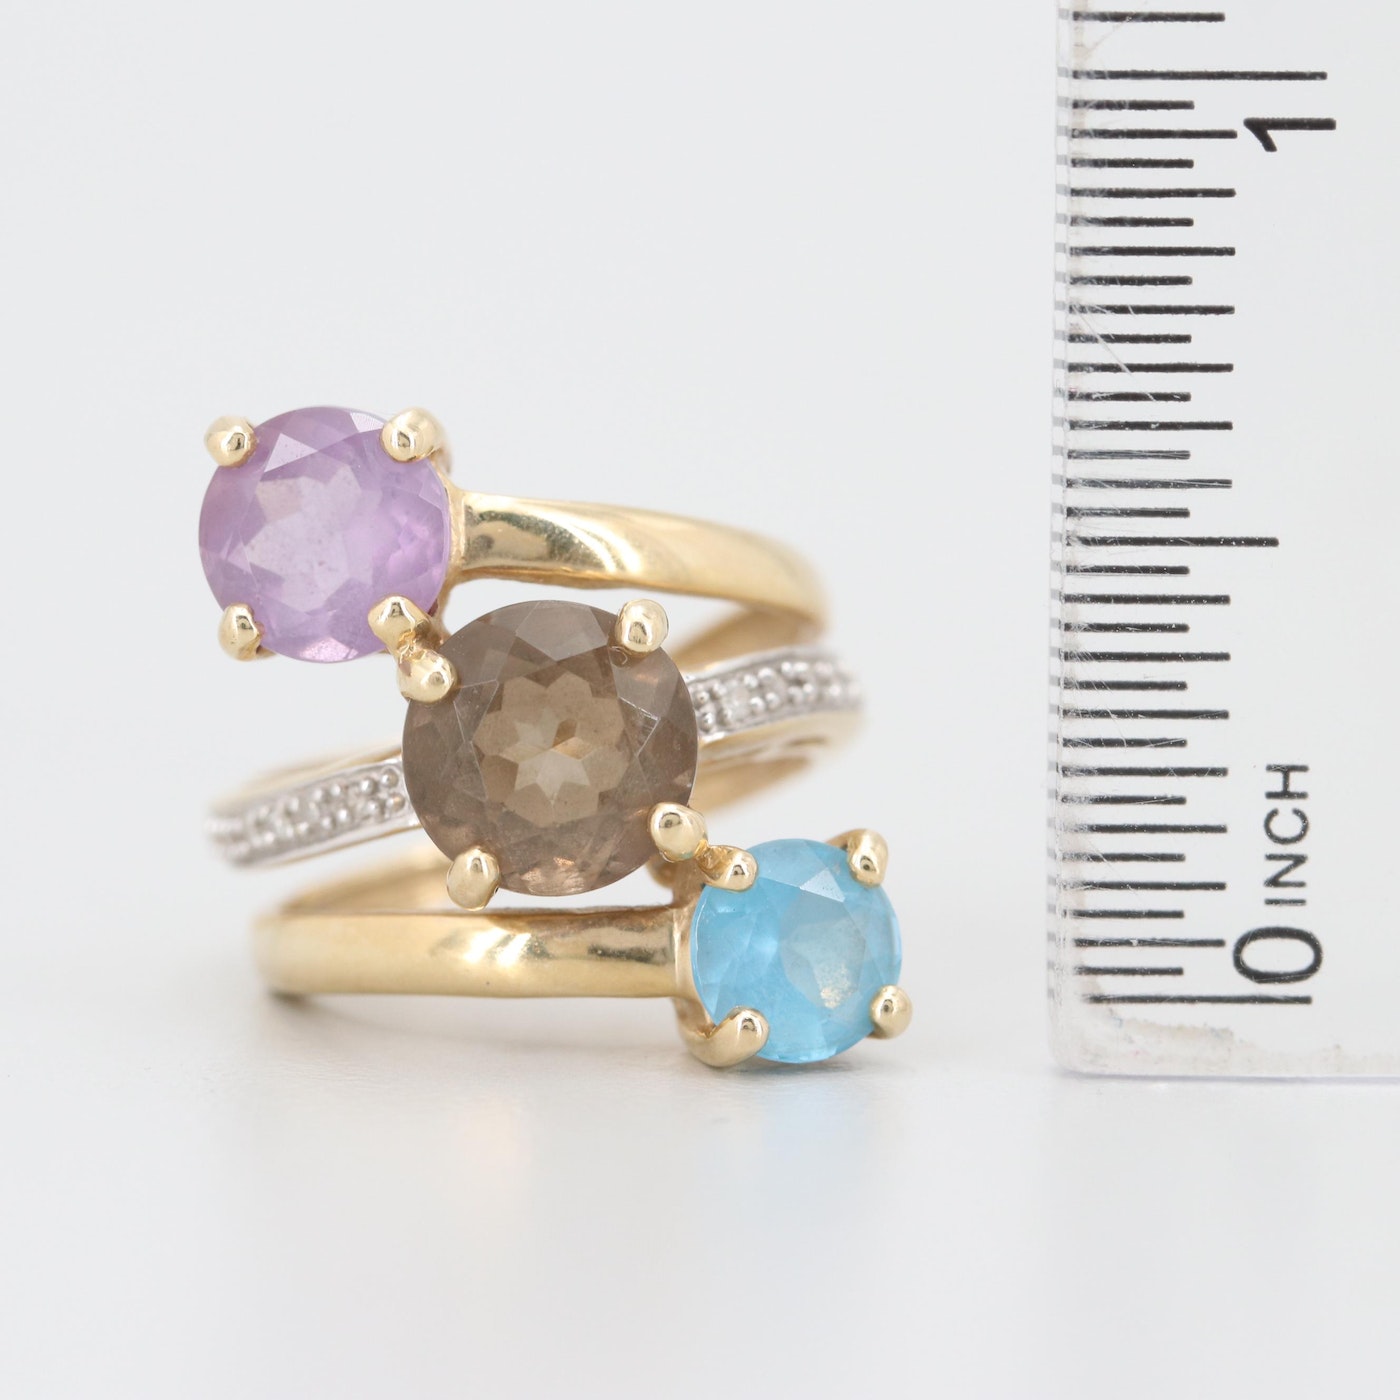 14K Yellow Gold Diamond and Three Gemstone Ring with Pavé Diamonds